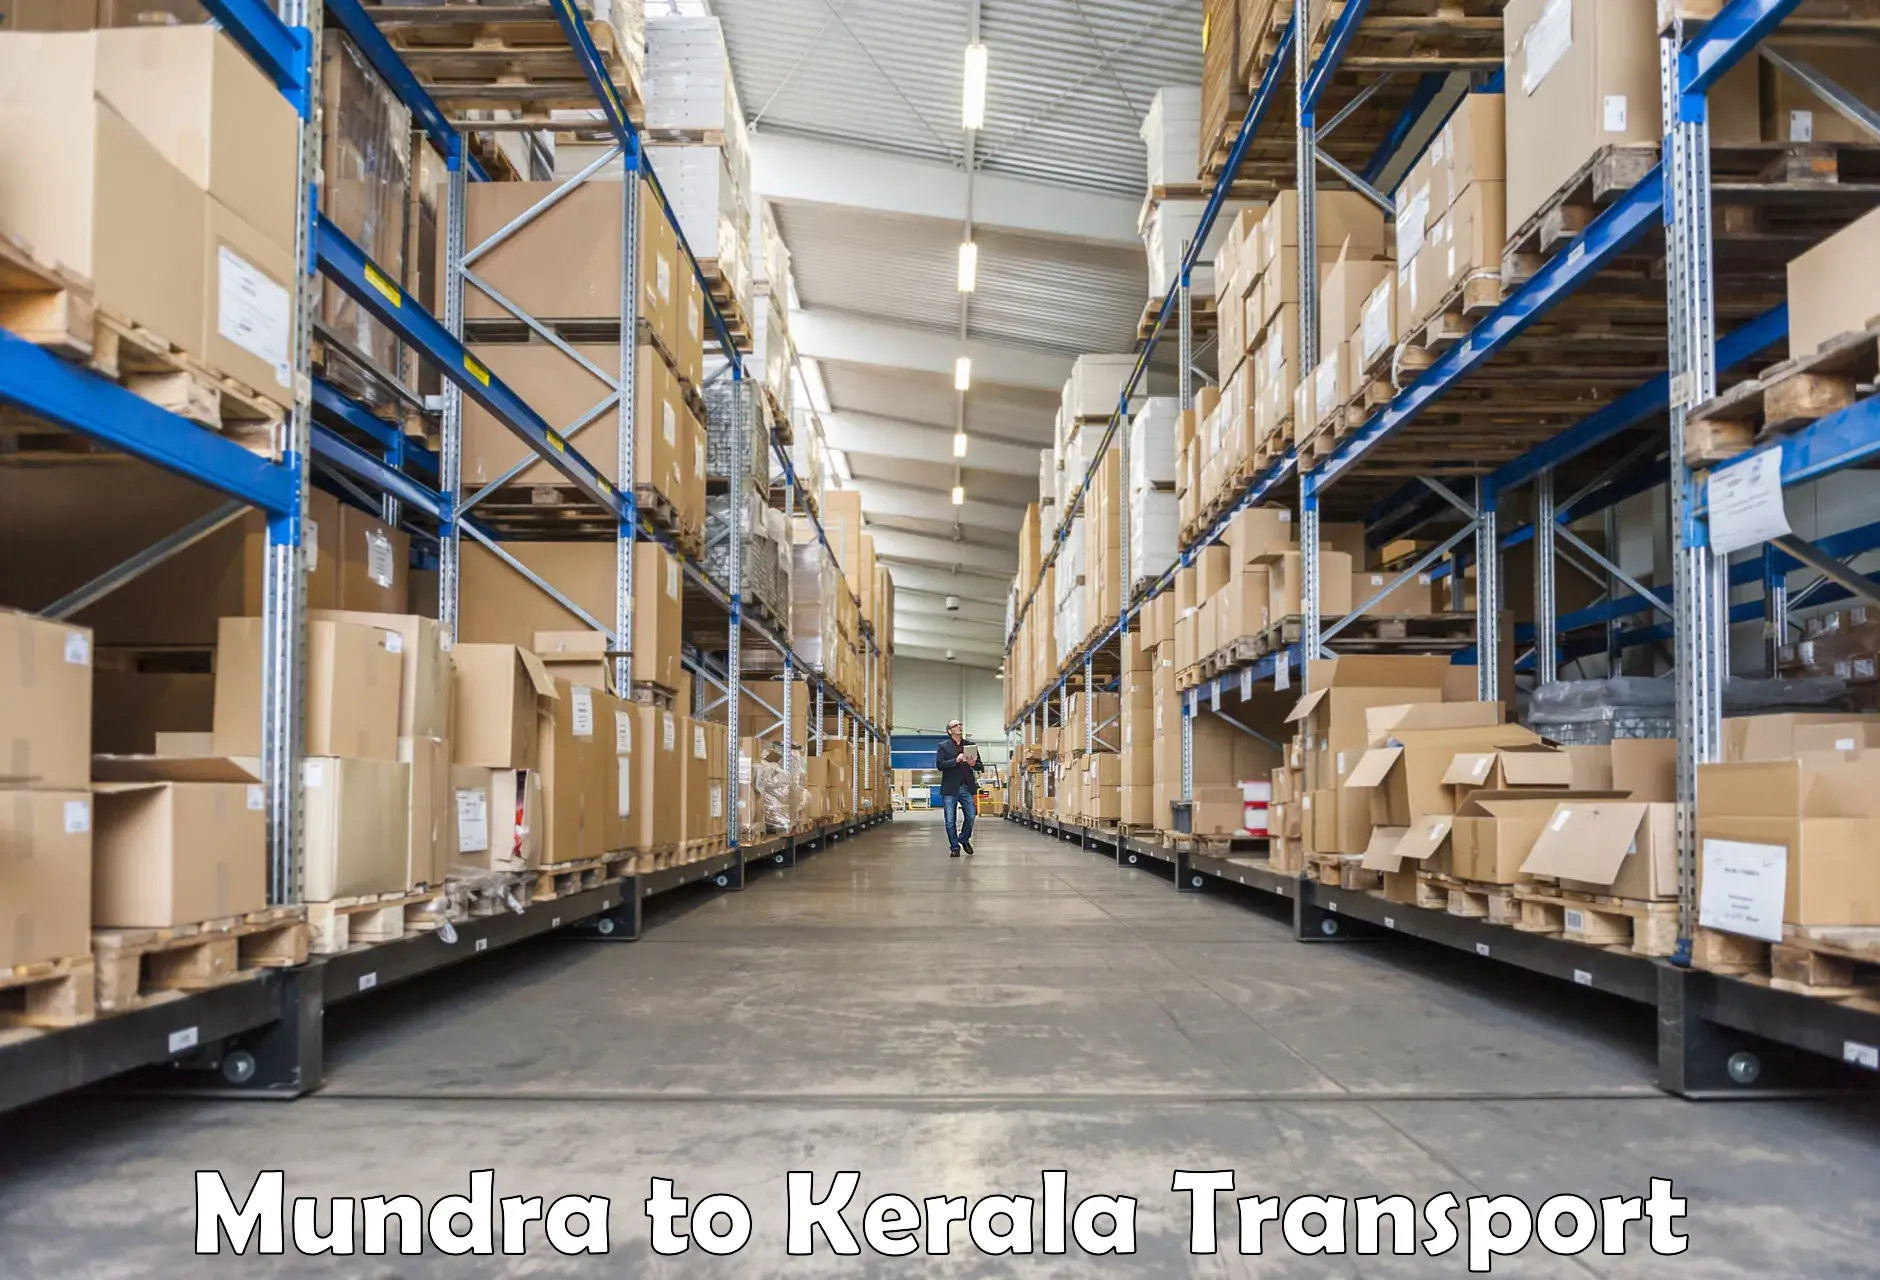 Nearest transport service Mundra to Kochi